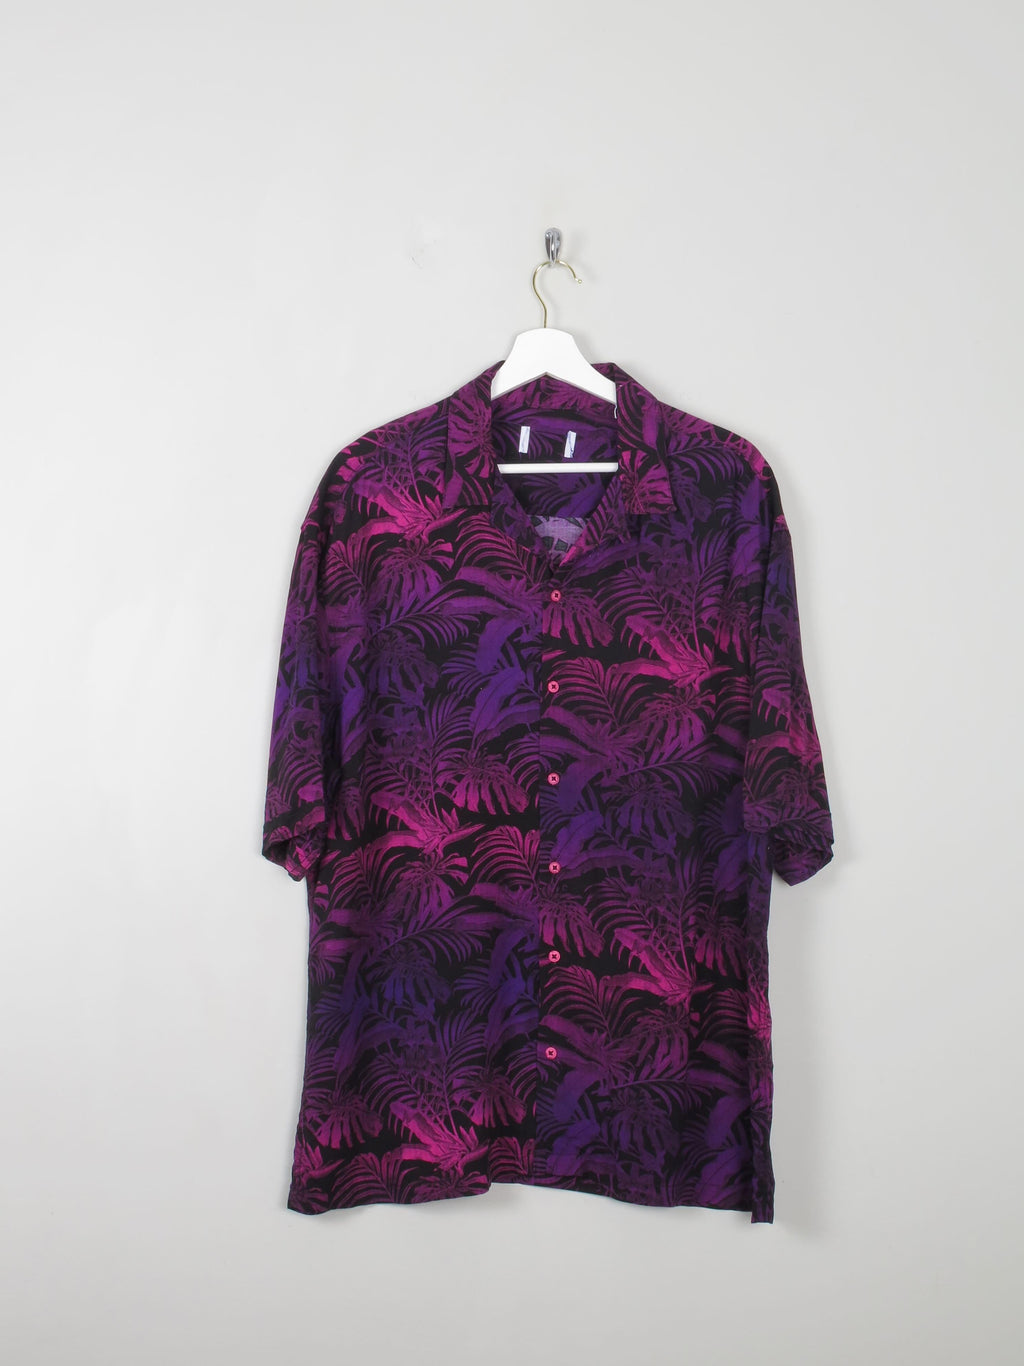 Men's Purple Hawaiian Shirt M New - The Harlequin